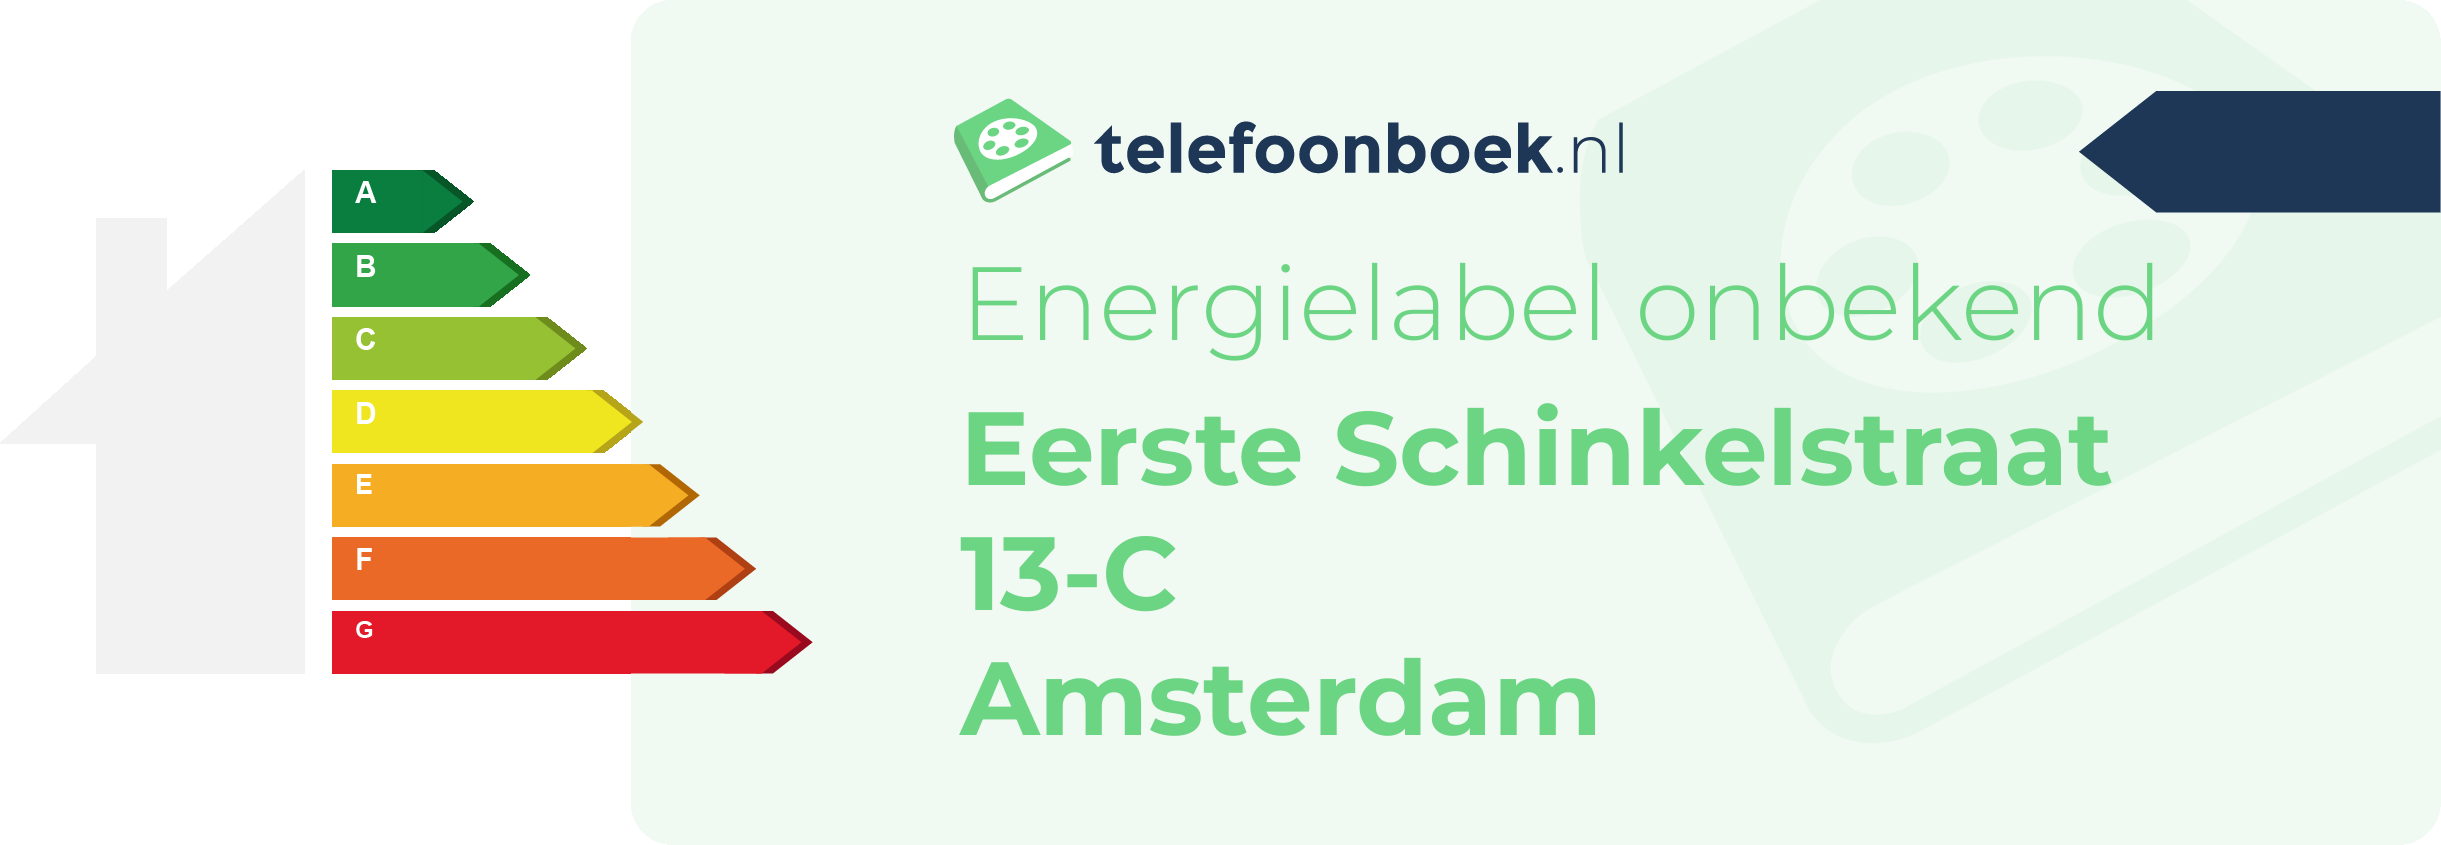 Energielabel Eerste Schinkelstraat 13-C Amsterdam